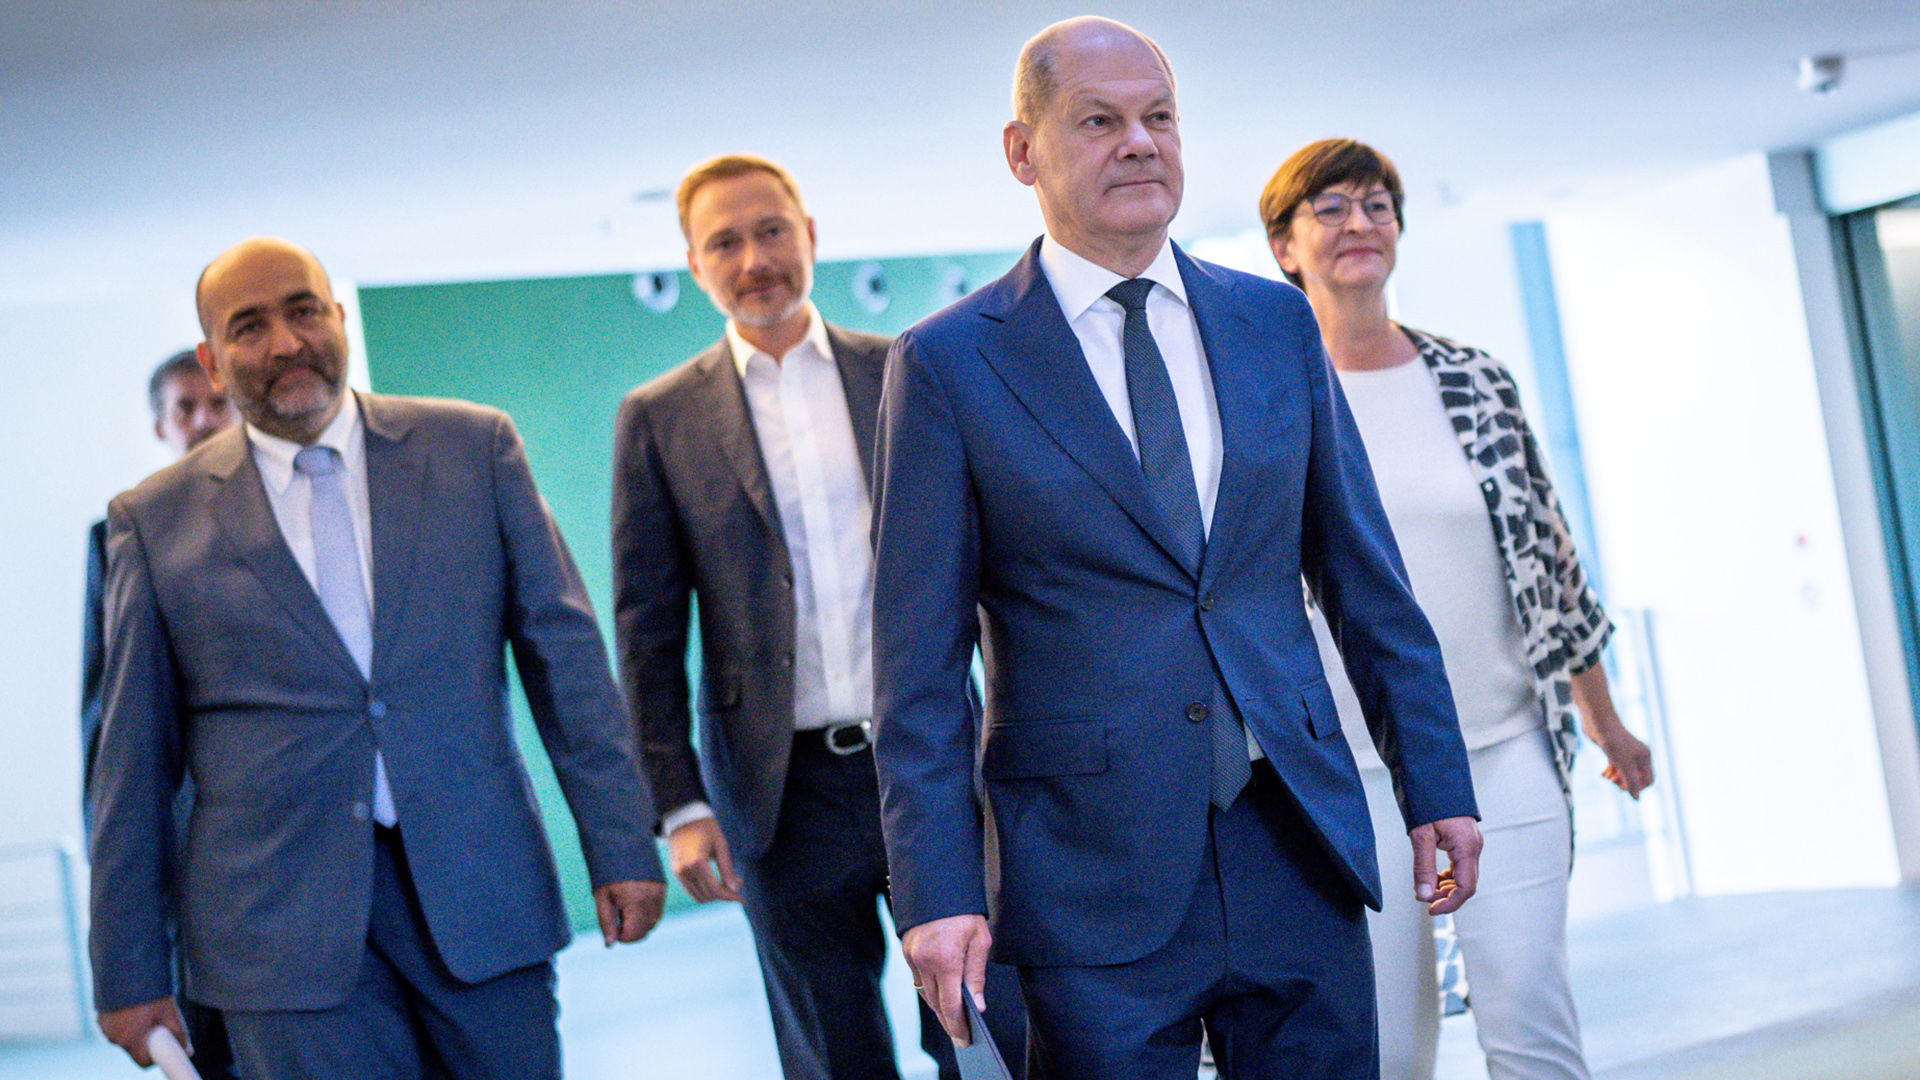 Olaf Scholz (2.v.r.), kommt neben Omid Nouripour (l), Saskia Esken (r) sowie Christian Lindner zur Pressekonferenz nach den Beratungen von SPD, Grünen und FDP im Koalitionsausschuss.